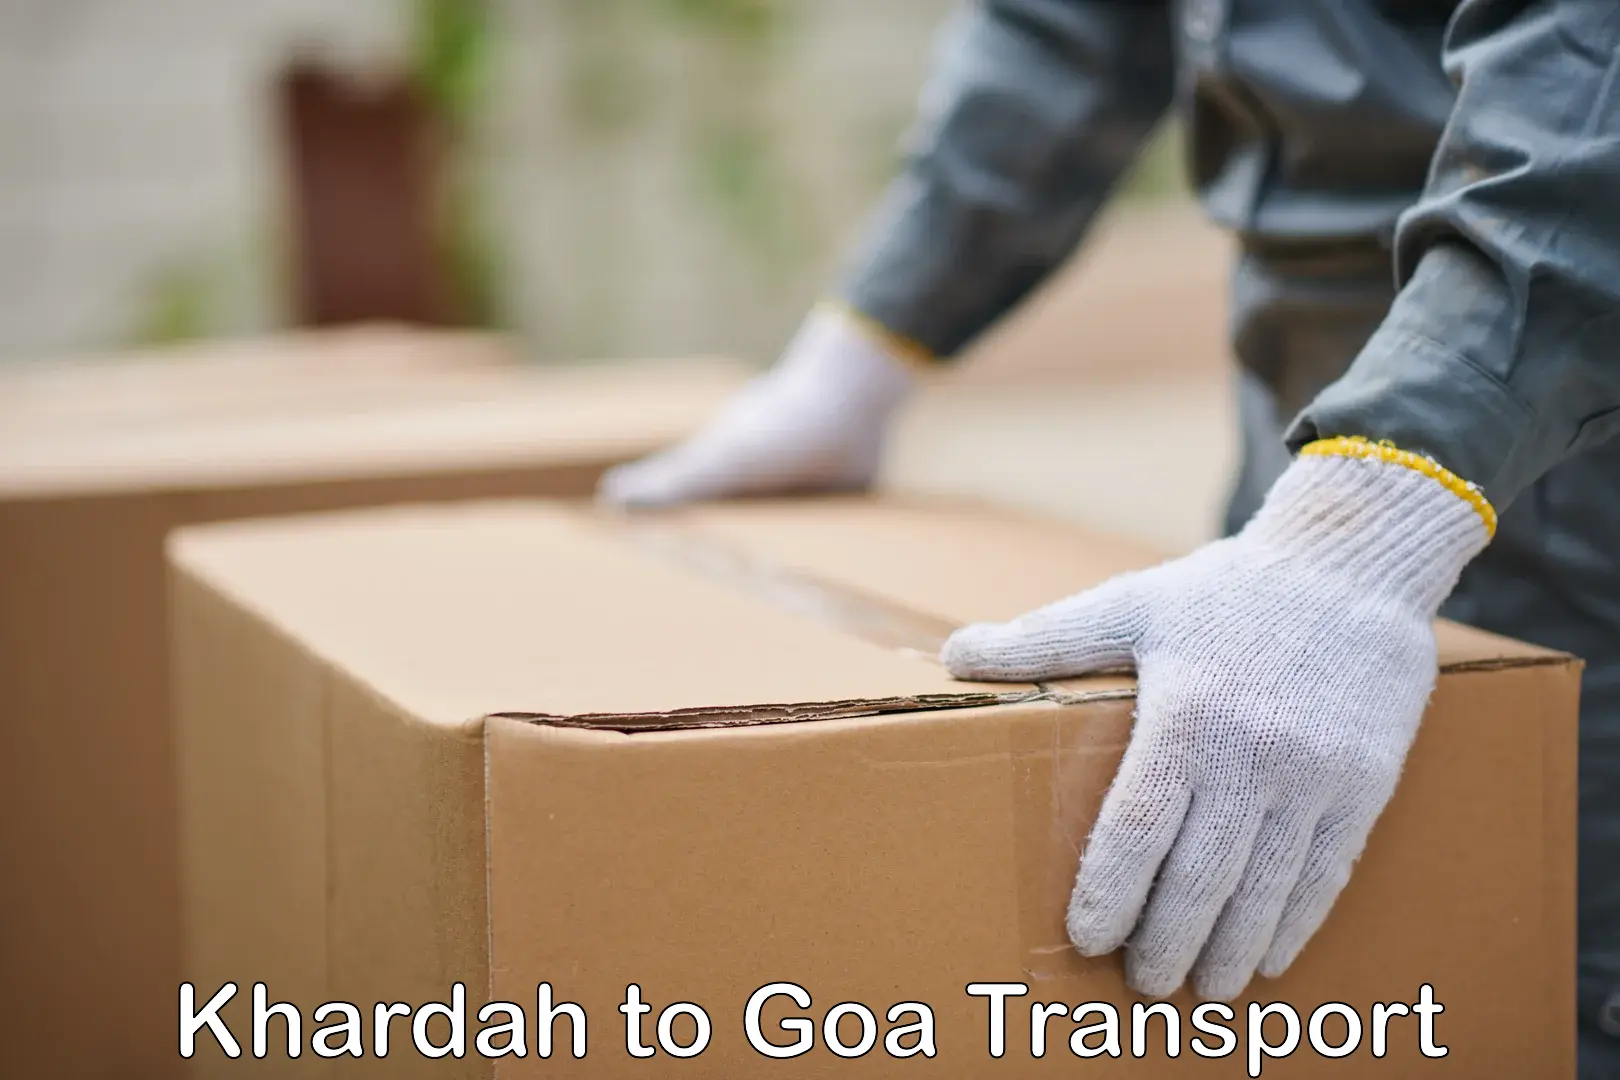 Daily transport service Khardah to Vasco da Gama